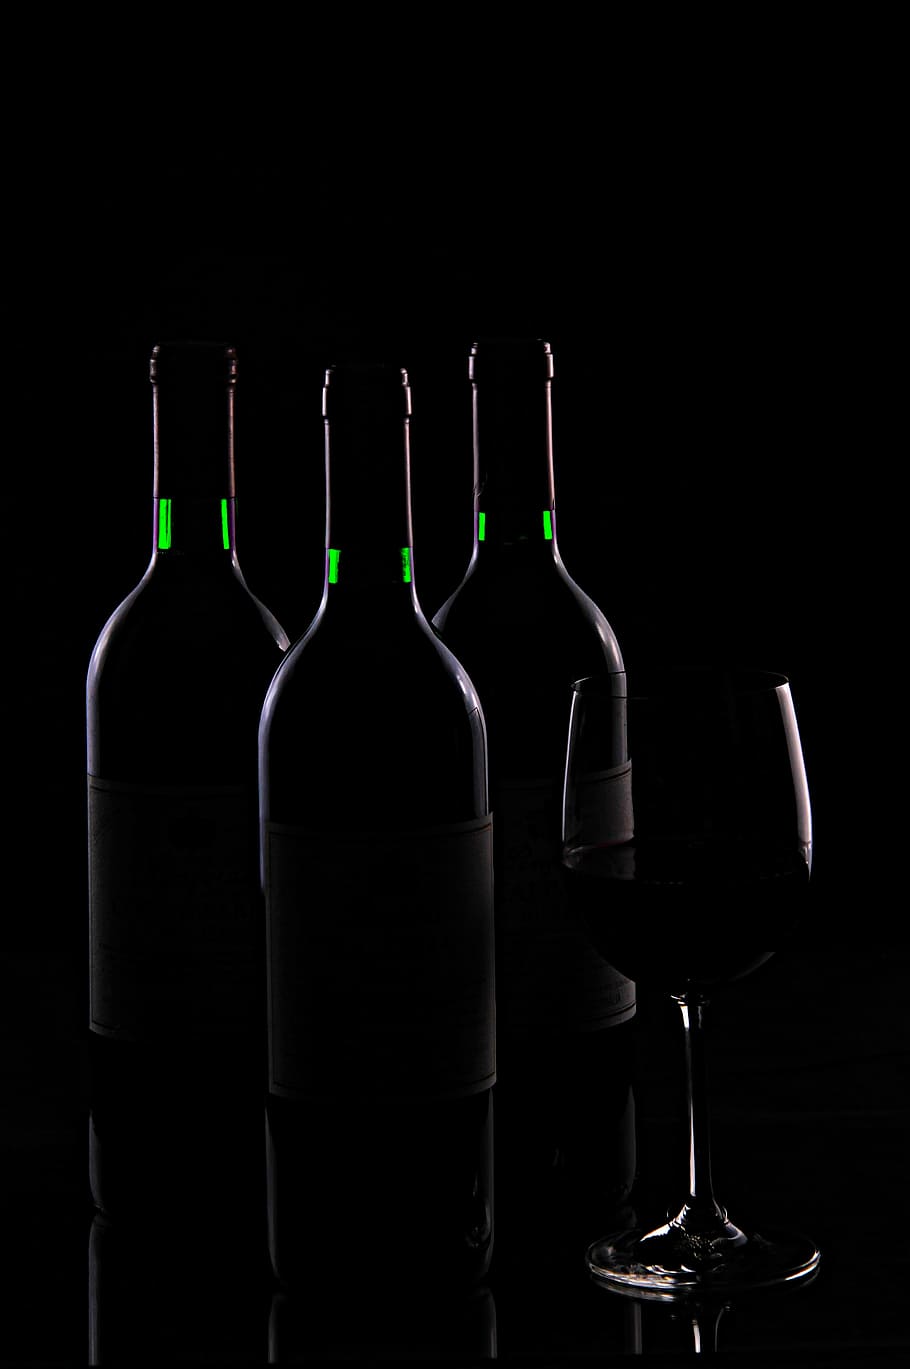 wine bottles illustration, Beverage, Drink, Alcohol, alcoholic, HD wallpaper